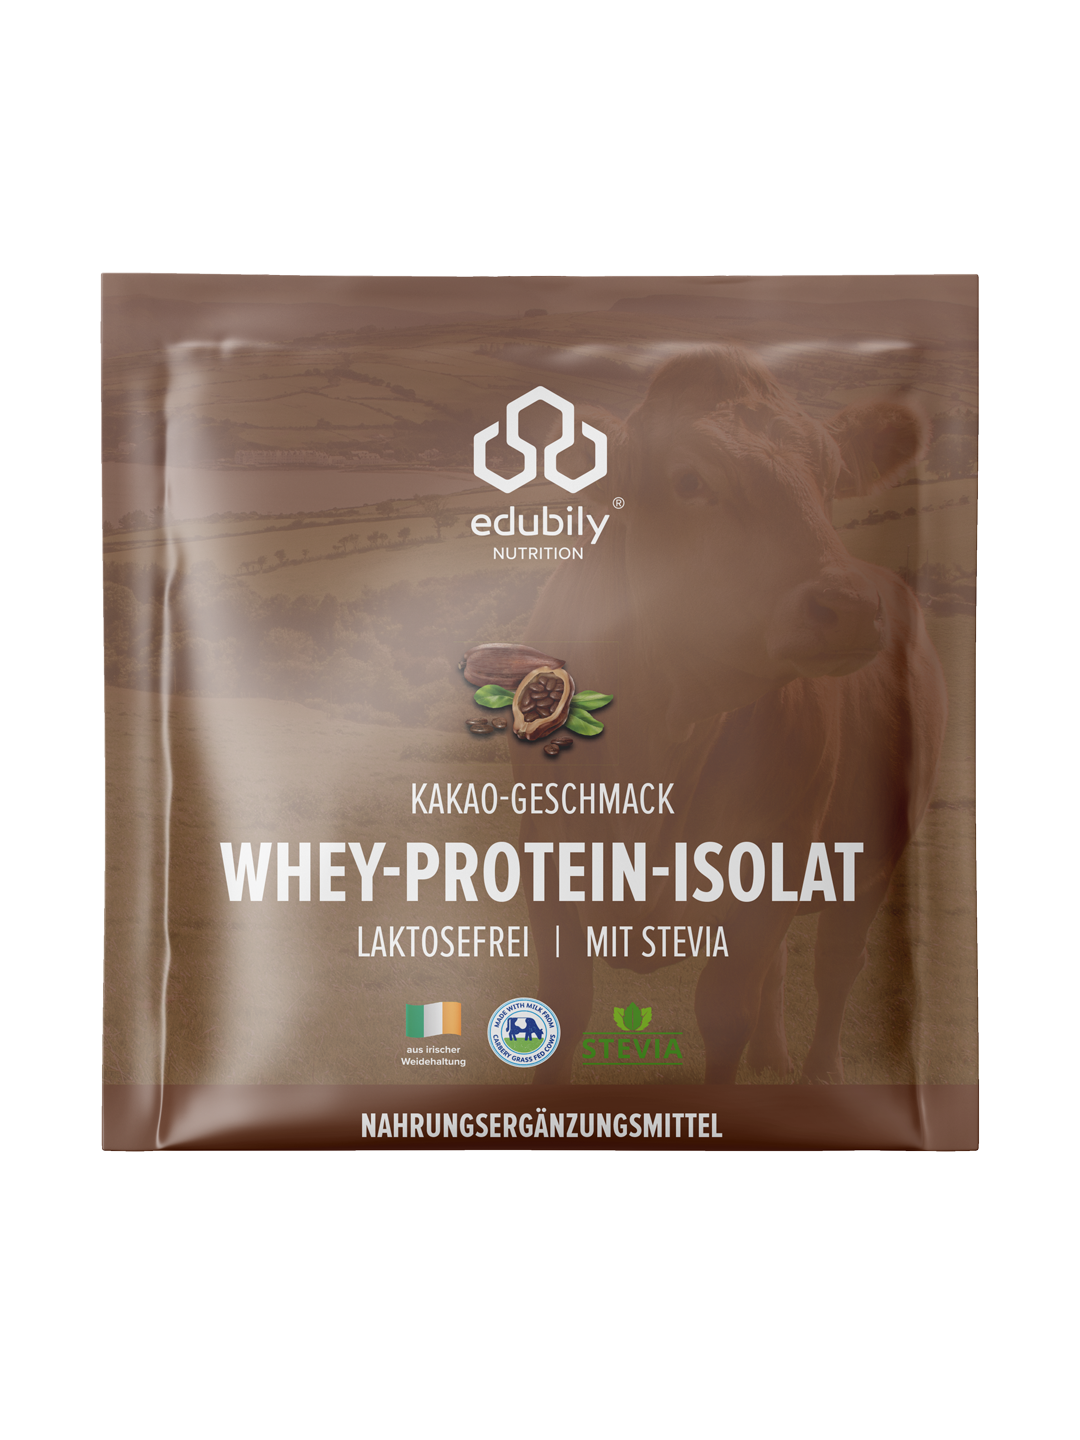 Whey-Protein-Isolat Probierbeutel Set - 4 Geschmacksrichtungen, 90% Proteinkonzentration